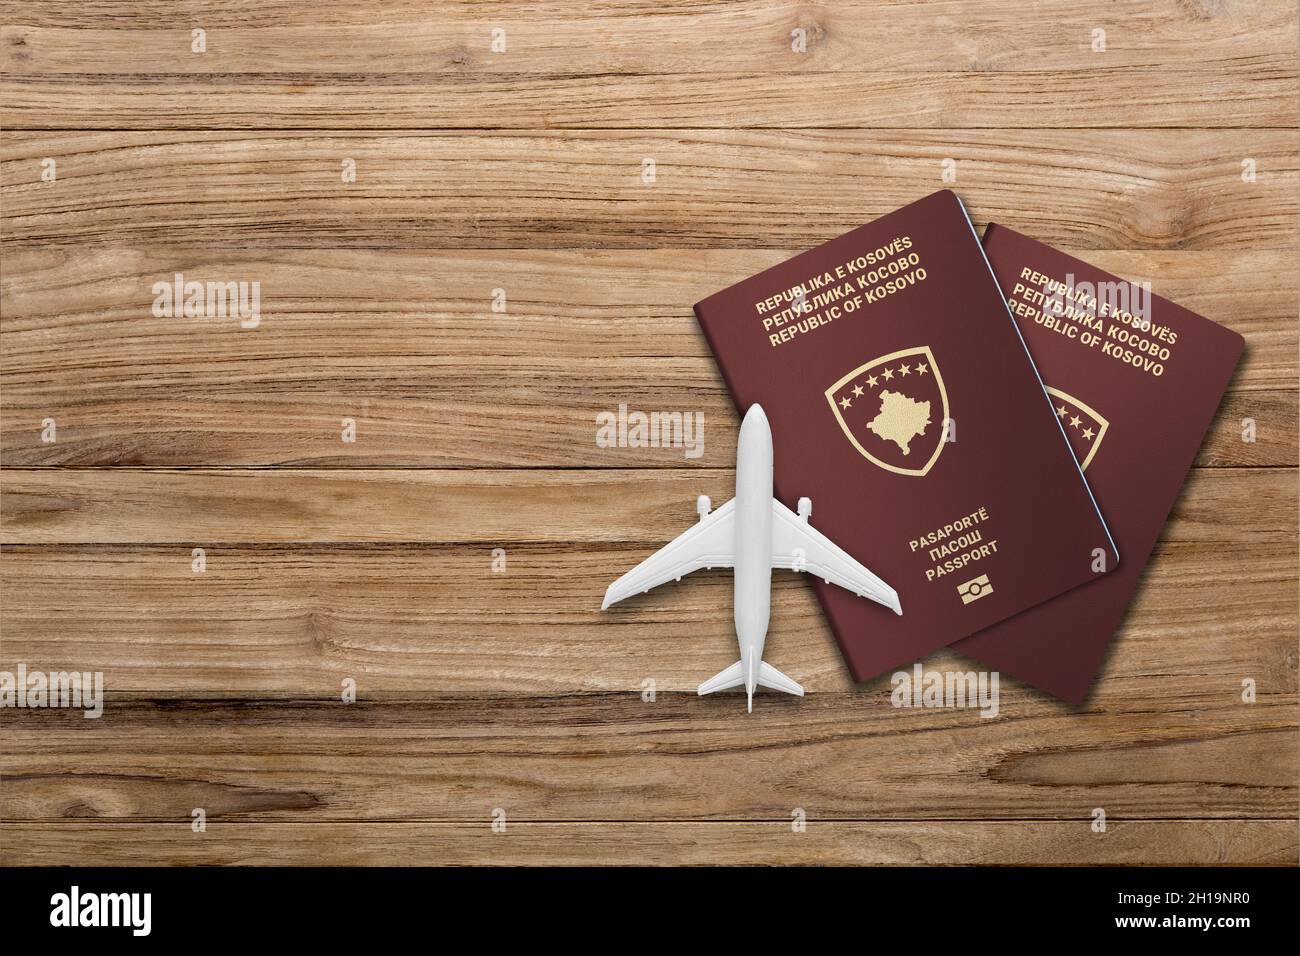 Maquette d'avion et passeport kosovan sur fond de bois, plat. Espace pour le texte Banque D'Images